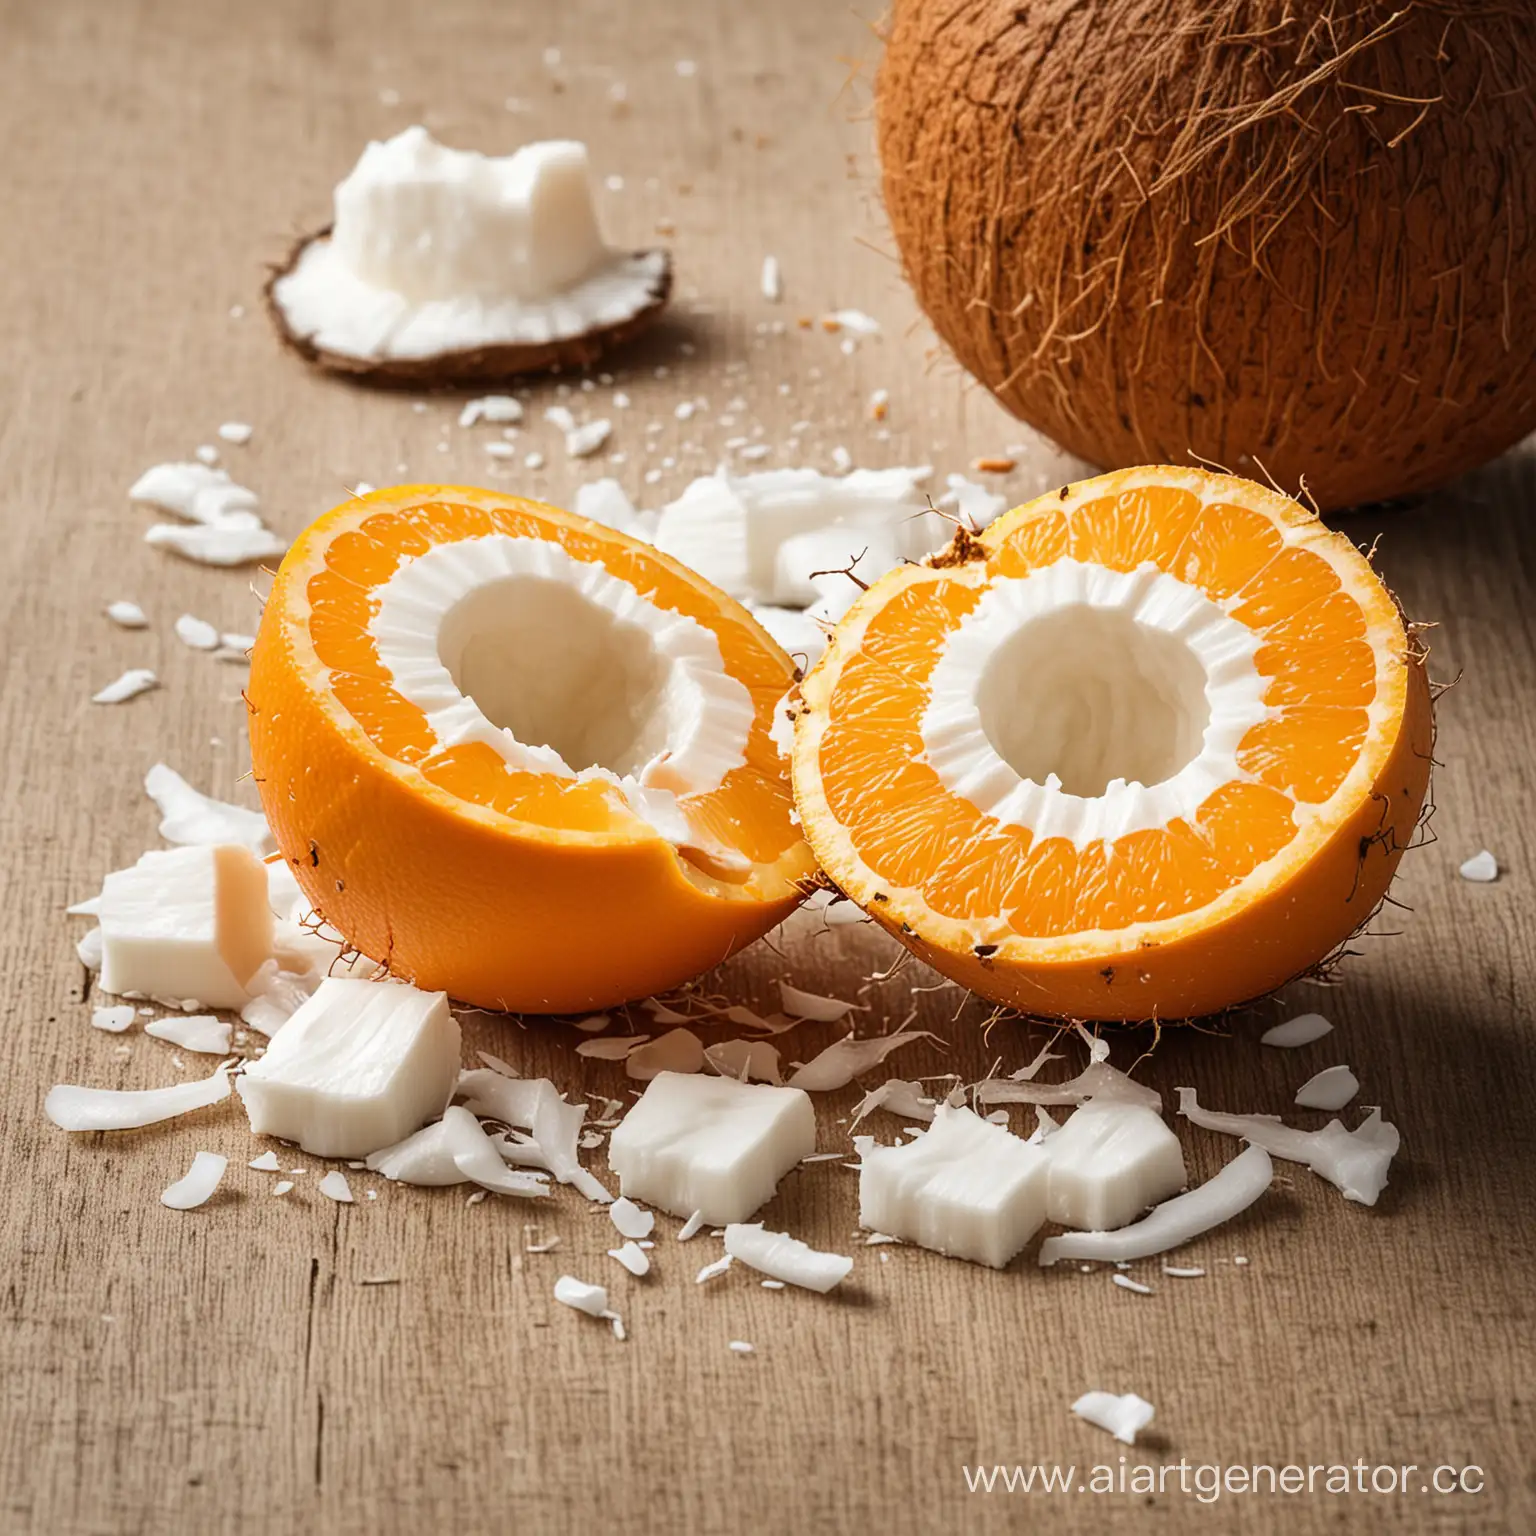 Апельсин дерется с кокосом